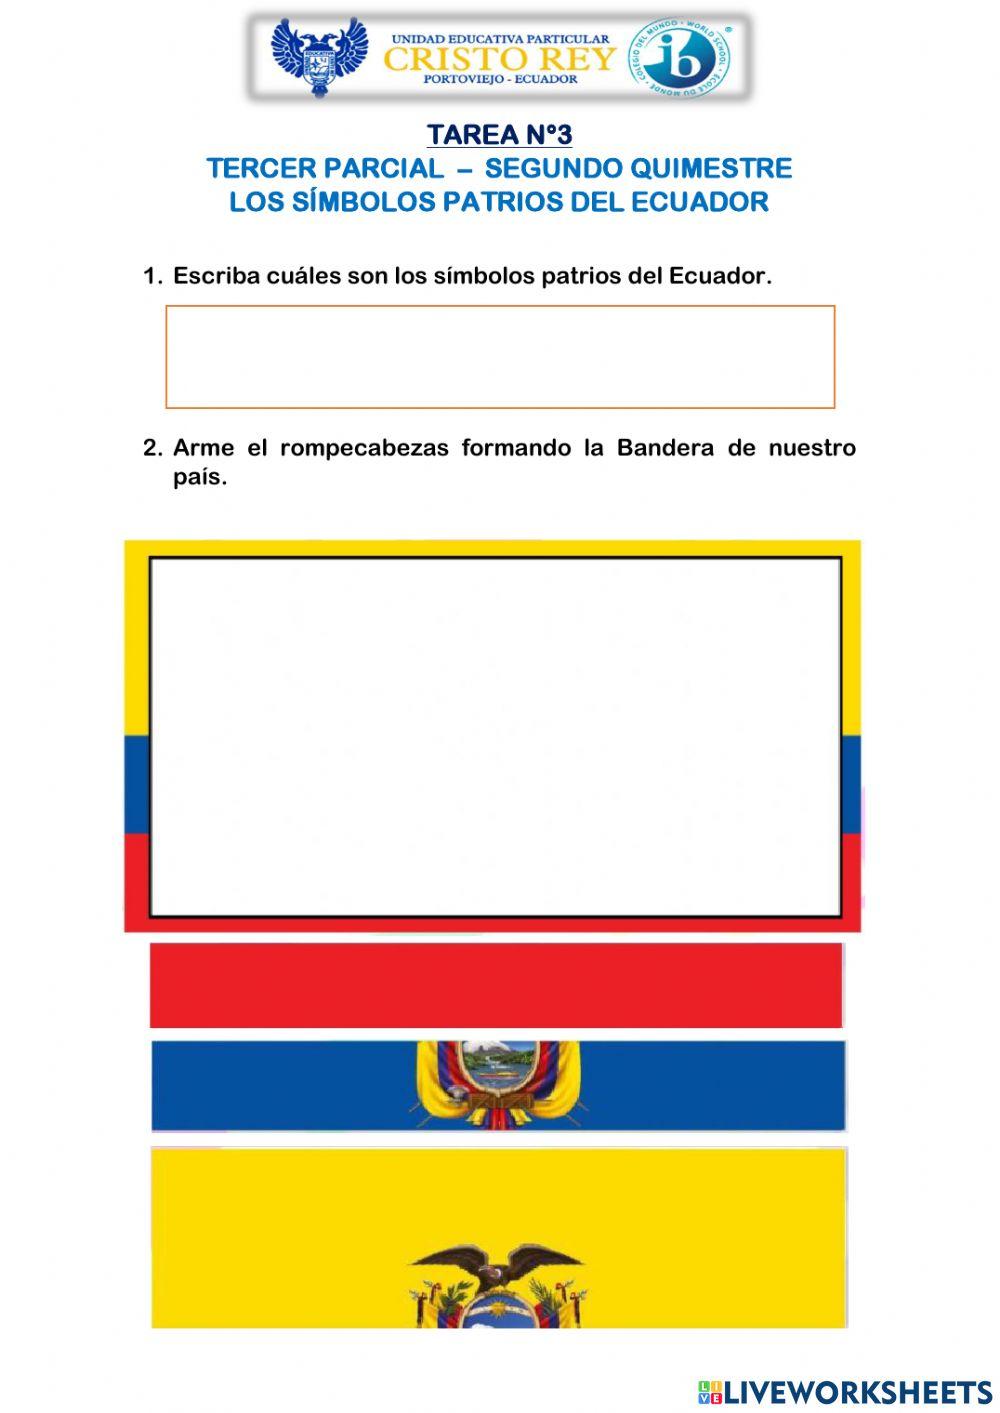 Los símbolos patrios del Ecuador